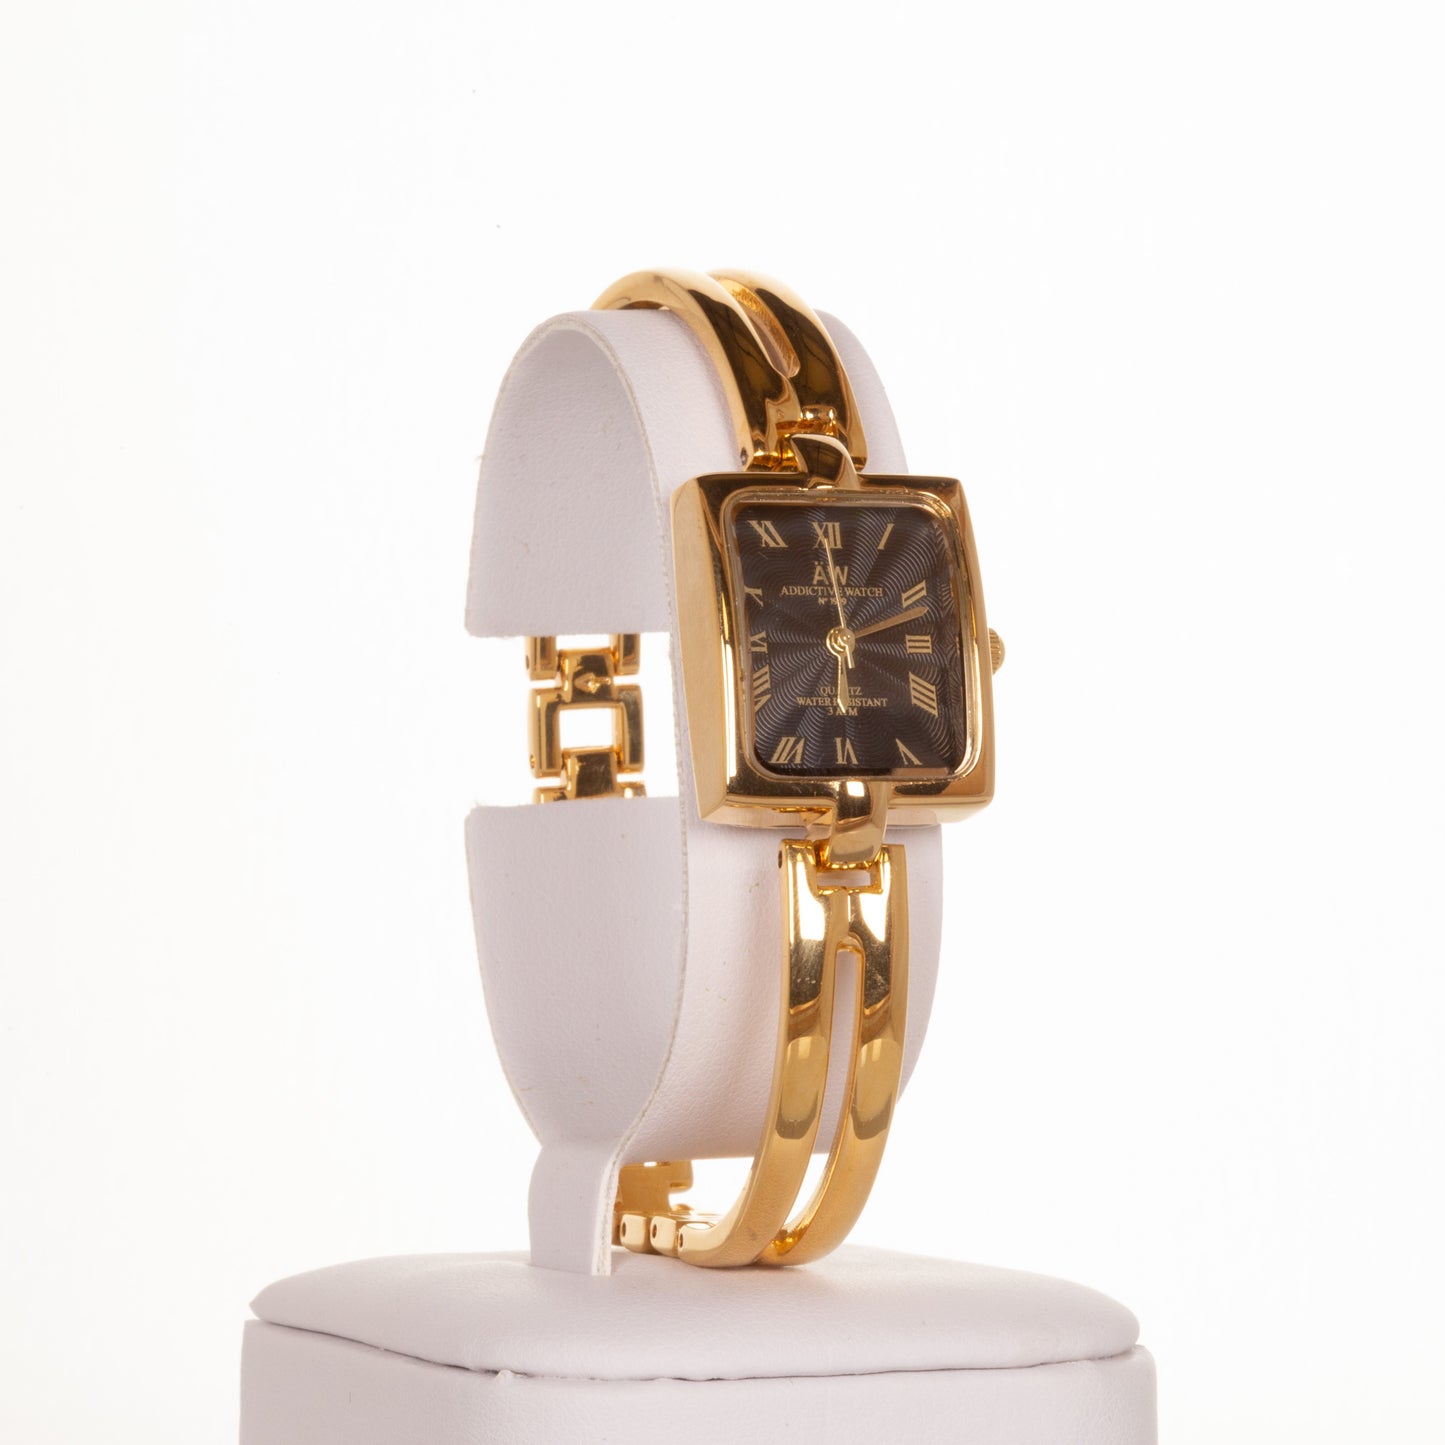 AW dámské hodinky v barvě zlata s černým ciferníkem s římskými číslicemi